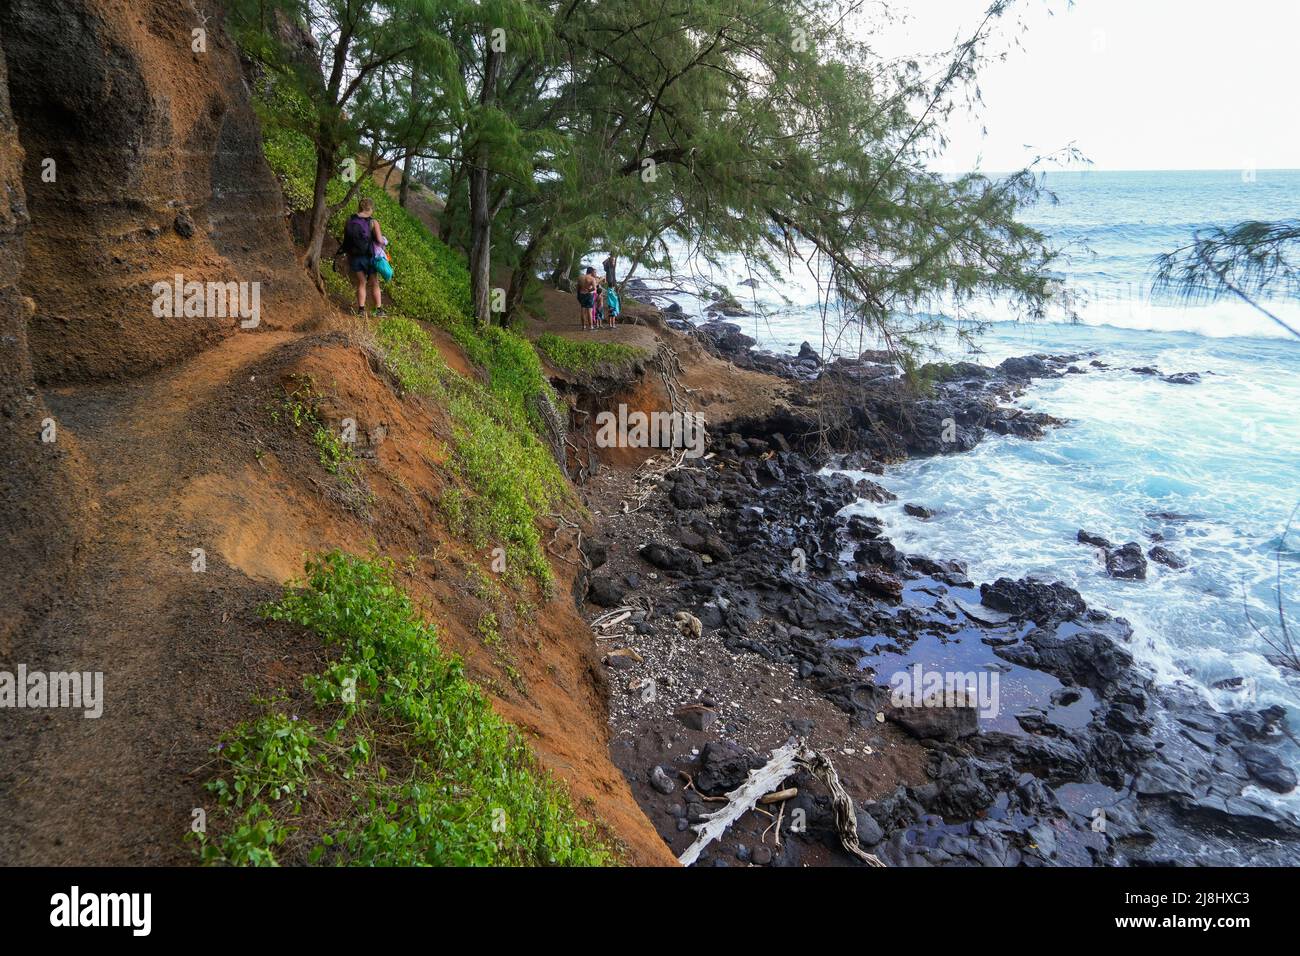 Sentier de terre à la plage de sable rouge de Kaihalulu sur la route de Hana, à l'est de l'île de Maui, à Hawaï, aux États-Unis Banque D'Images